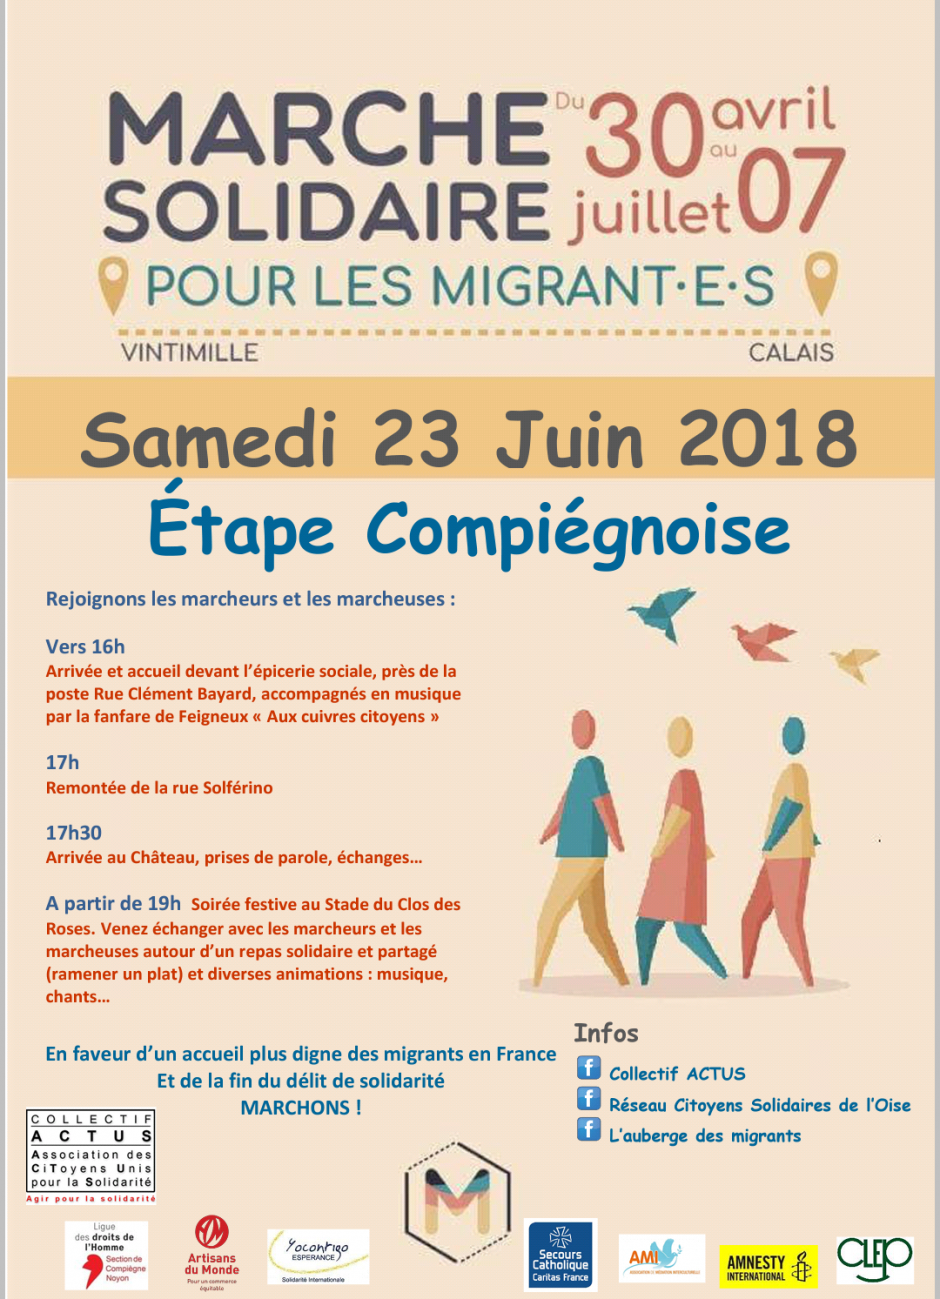 Marche solidaire pour les migrants : étape compiégnoise - 23 juin 2018